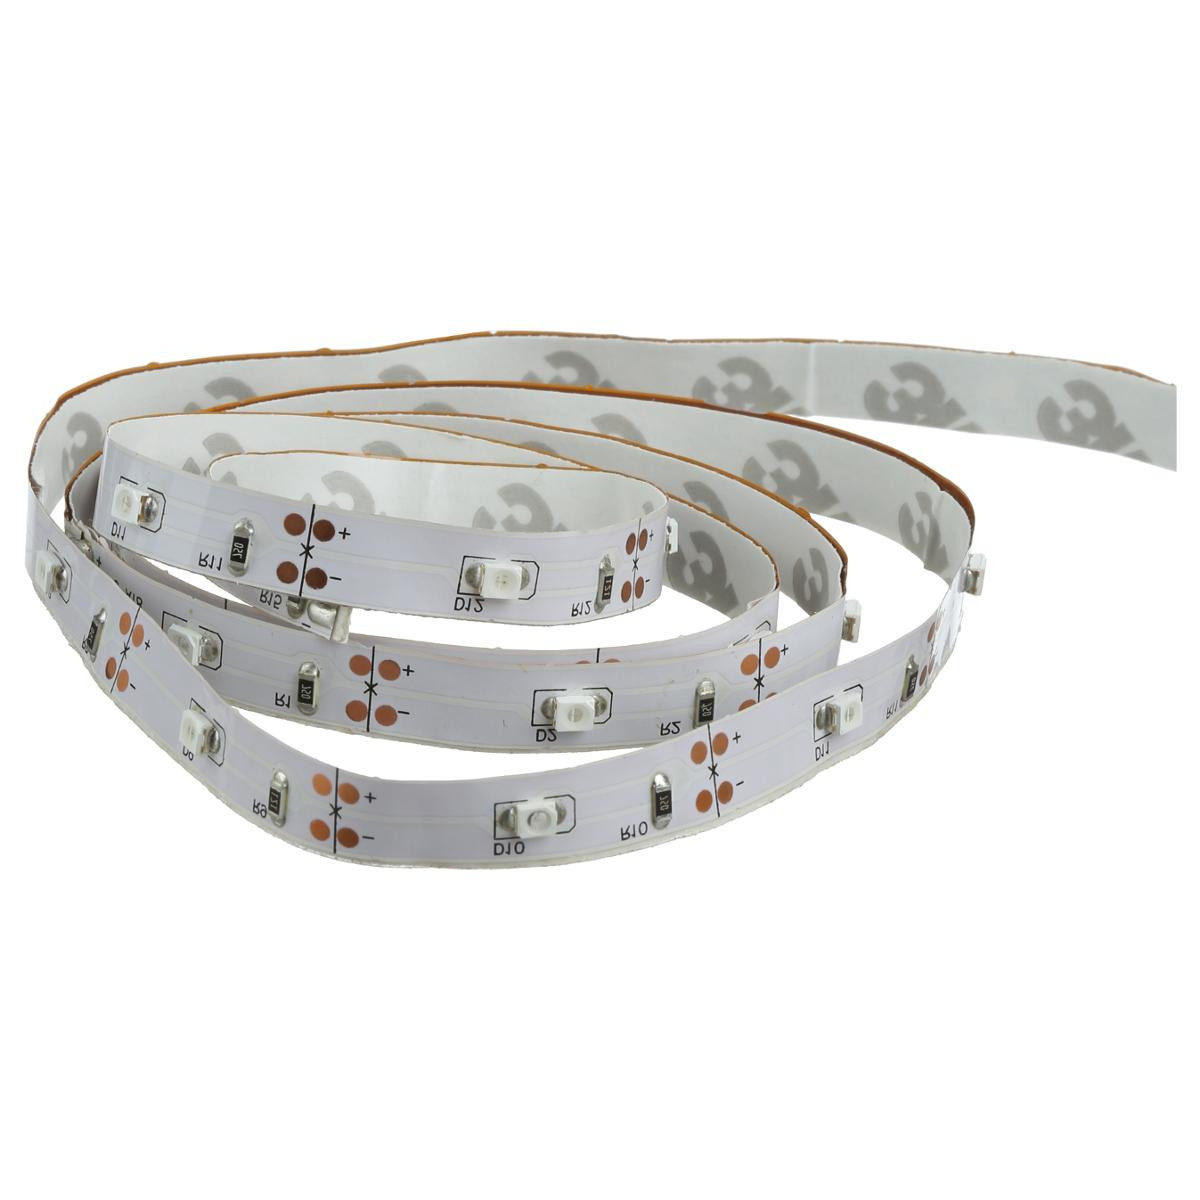 Ruban LED blanc froid à piles 1M - Guirlande et décoration lumineuse -  Décomania